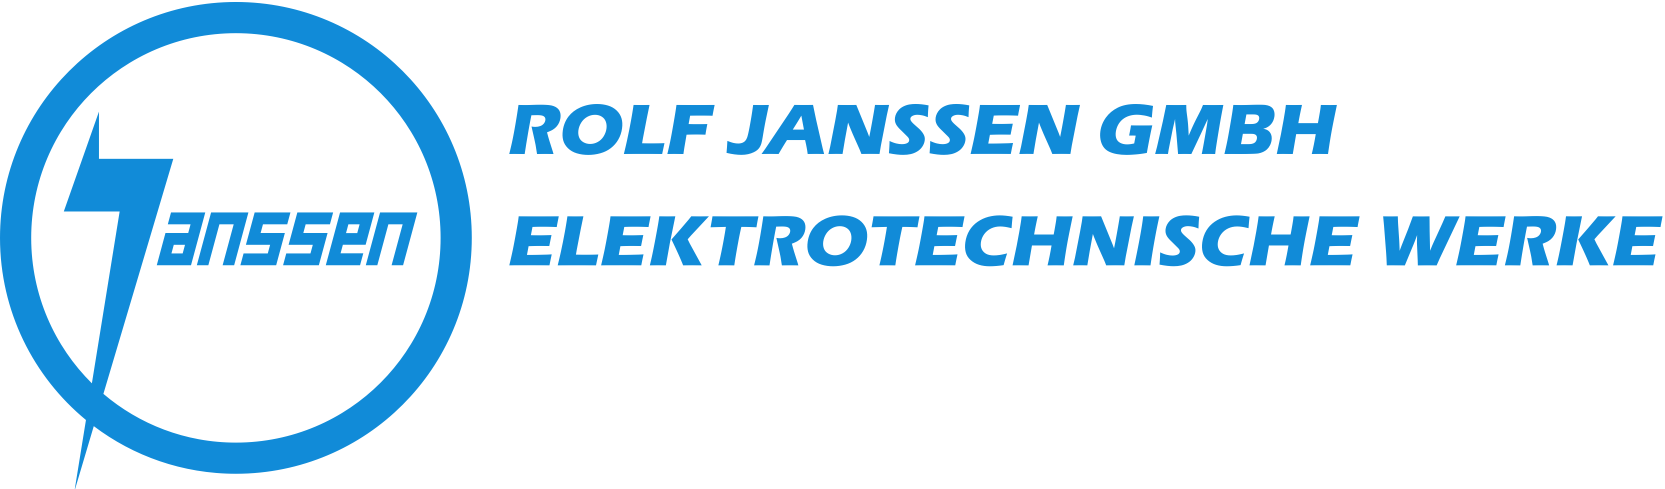 Logo der Rolf Janssen GmbH Elektrotechnische Werke, 59 k